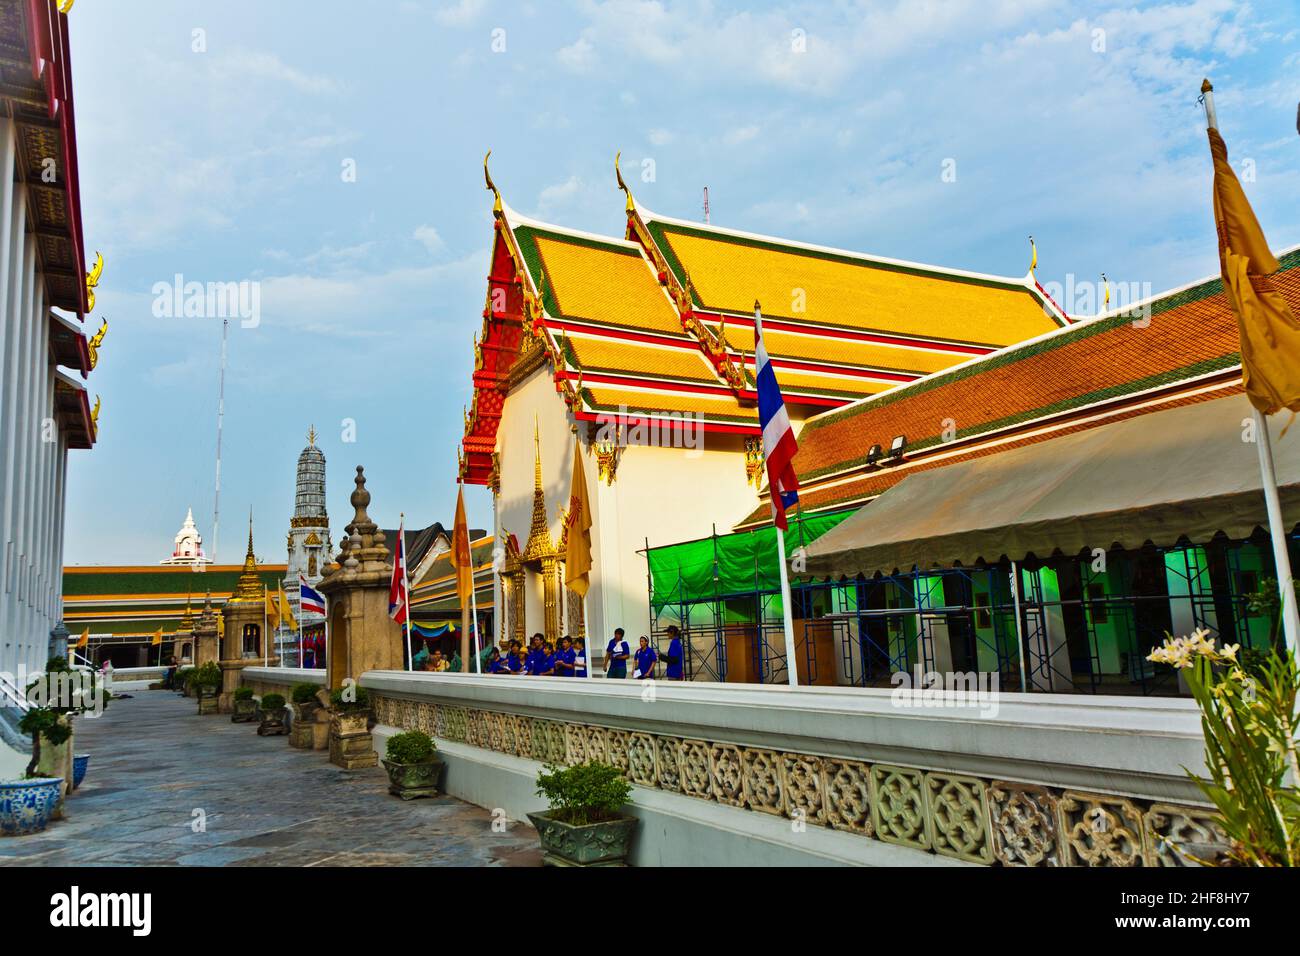 Zone de Tempel Wat Pho à Bangkok avec un toit coloré dans une belle lumière Banque D'Images